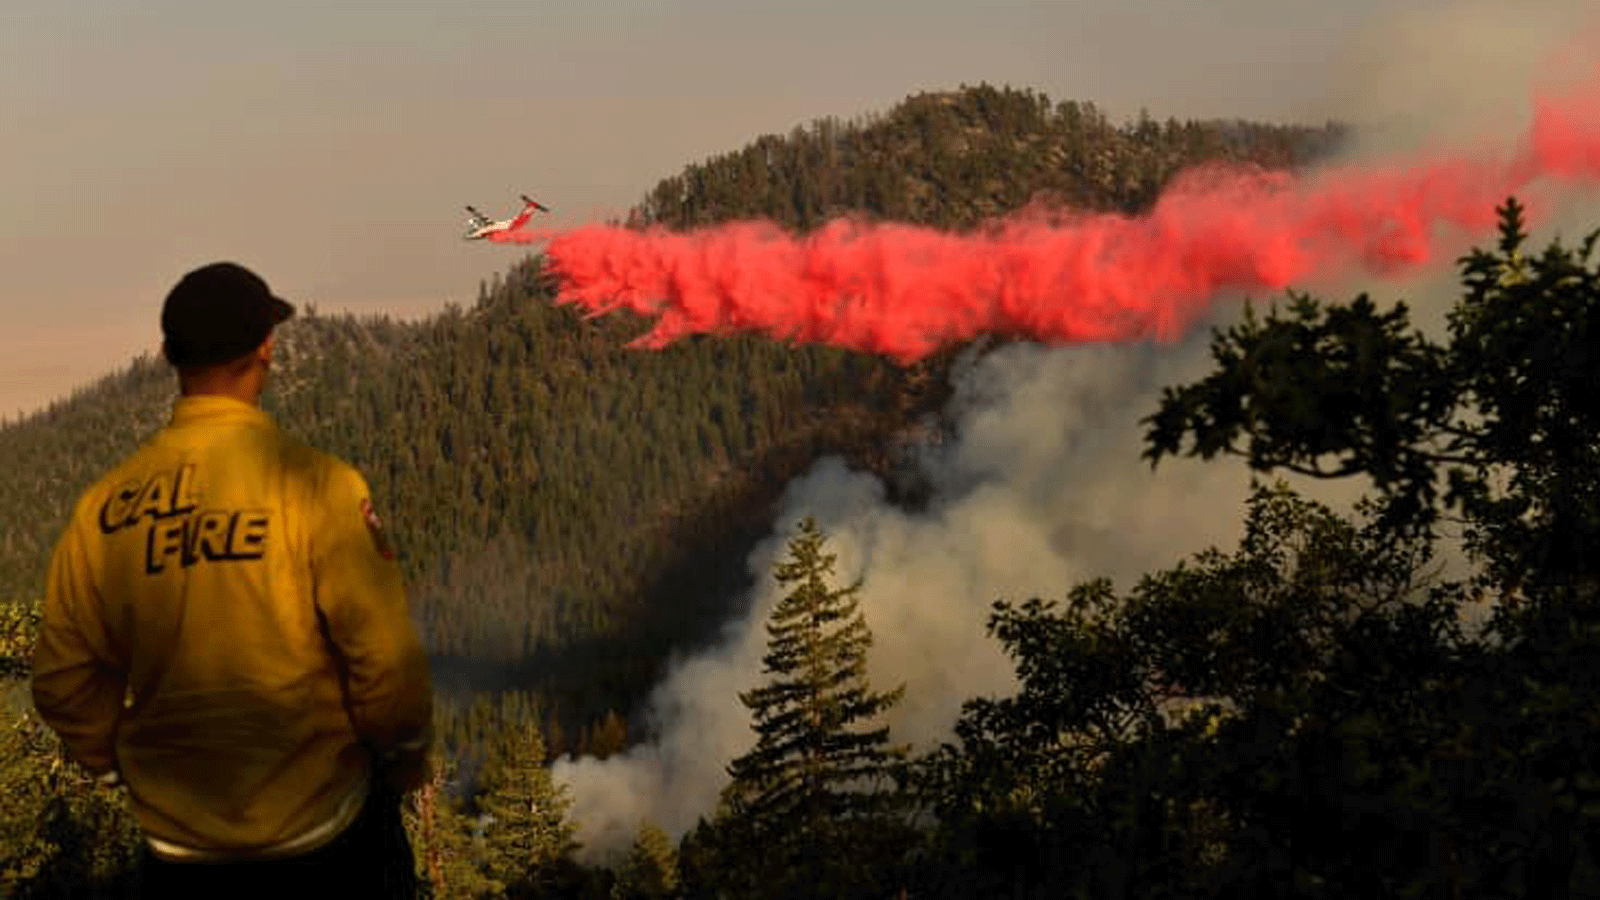 رجل إطفاء من Cal Fire من وحدة Lassen-Modoc يراقب بينما تقوم ناقلة جوية بإسقاط مثبطات الحريق على نار ديكسي حيث تحترق الأشجار على أحد التلال في 18 آب/ أغسطس 2021 بالقرب من جانيسفيل، كاليفورنيا